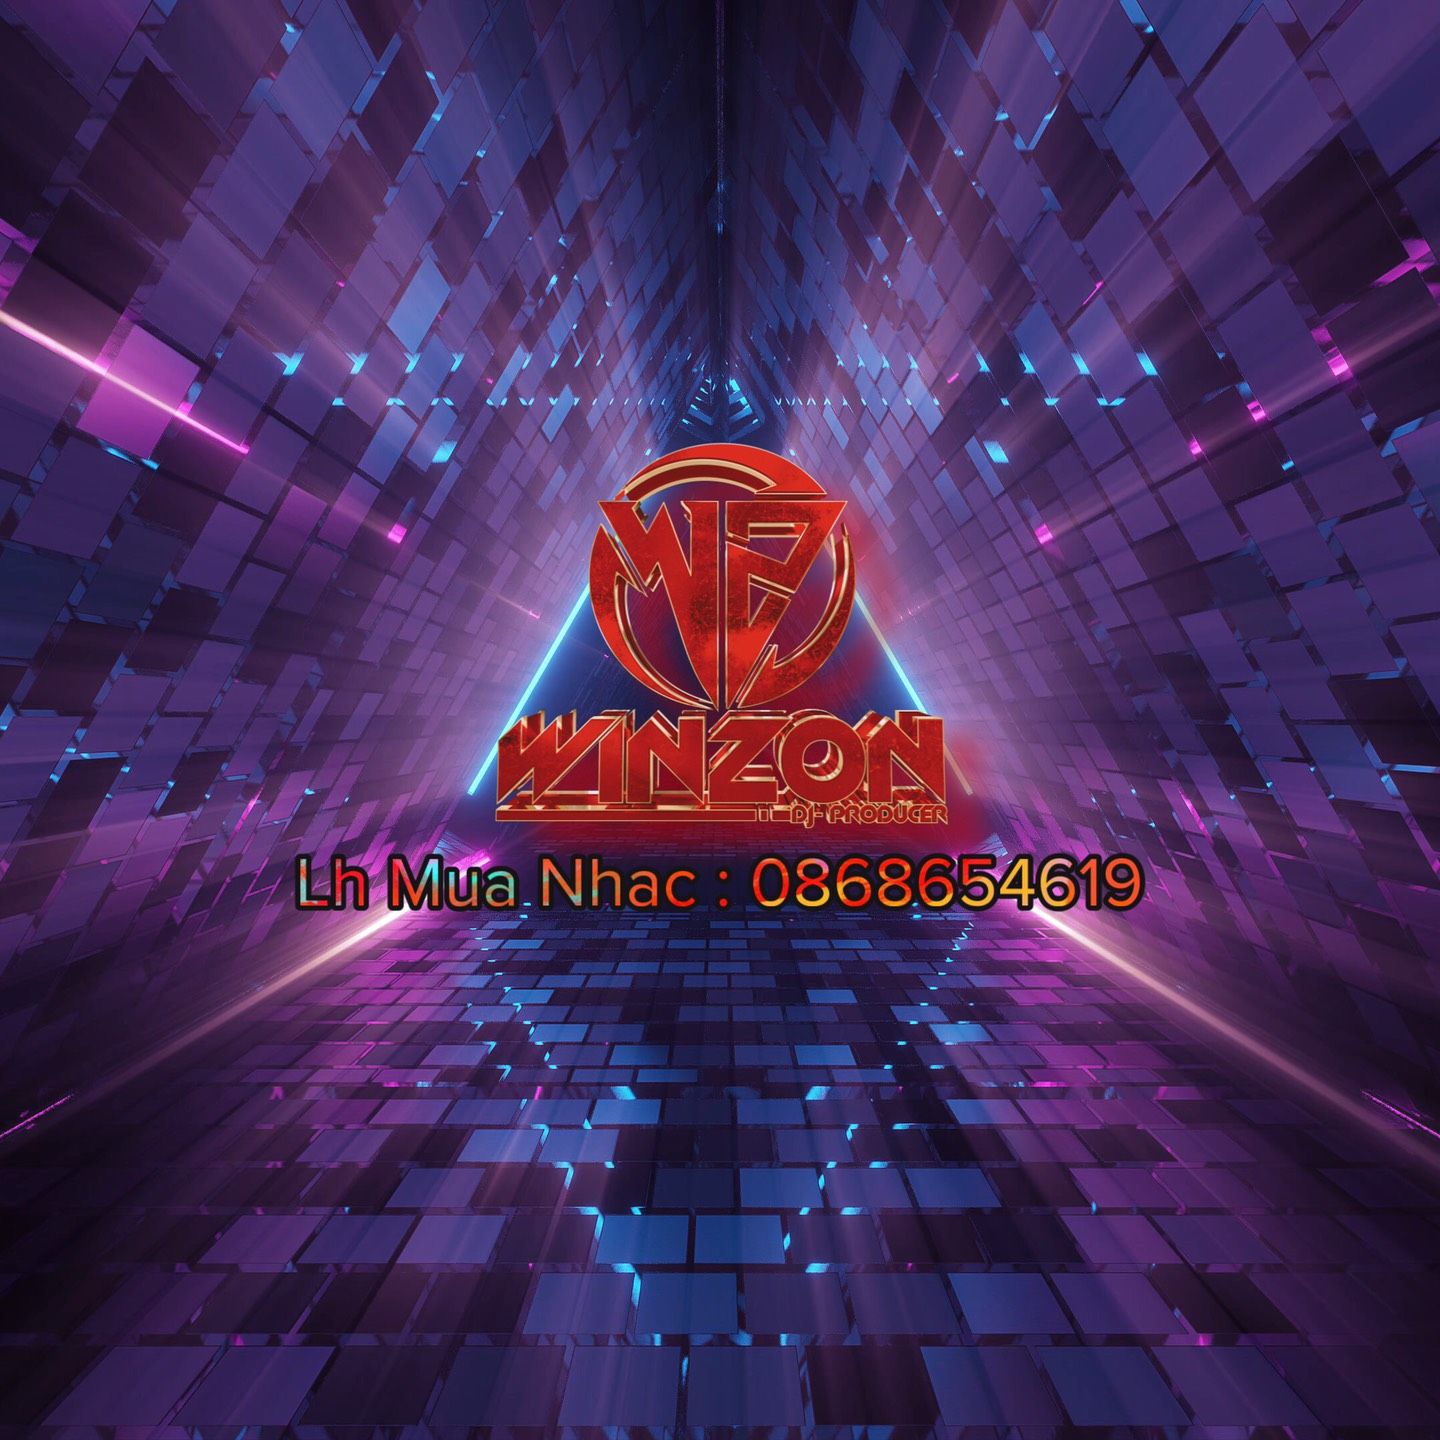 دانلود Anaconda 2021 - Winzon Remix